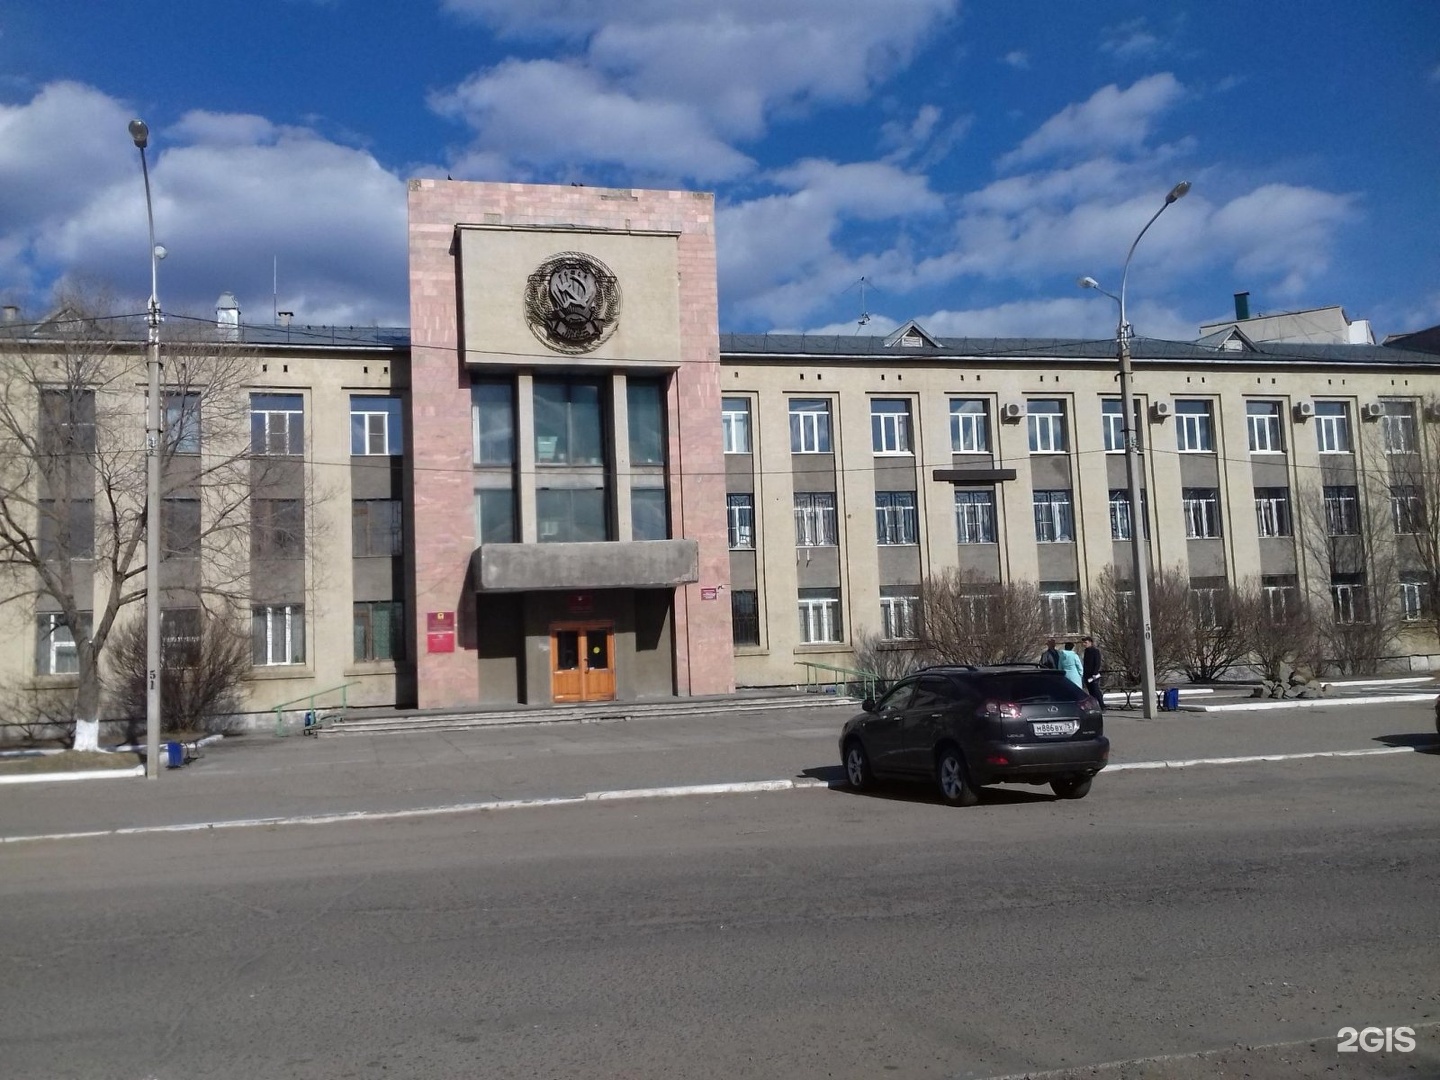 Черновский районный суд забайкальского края